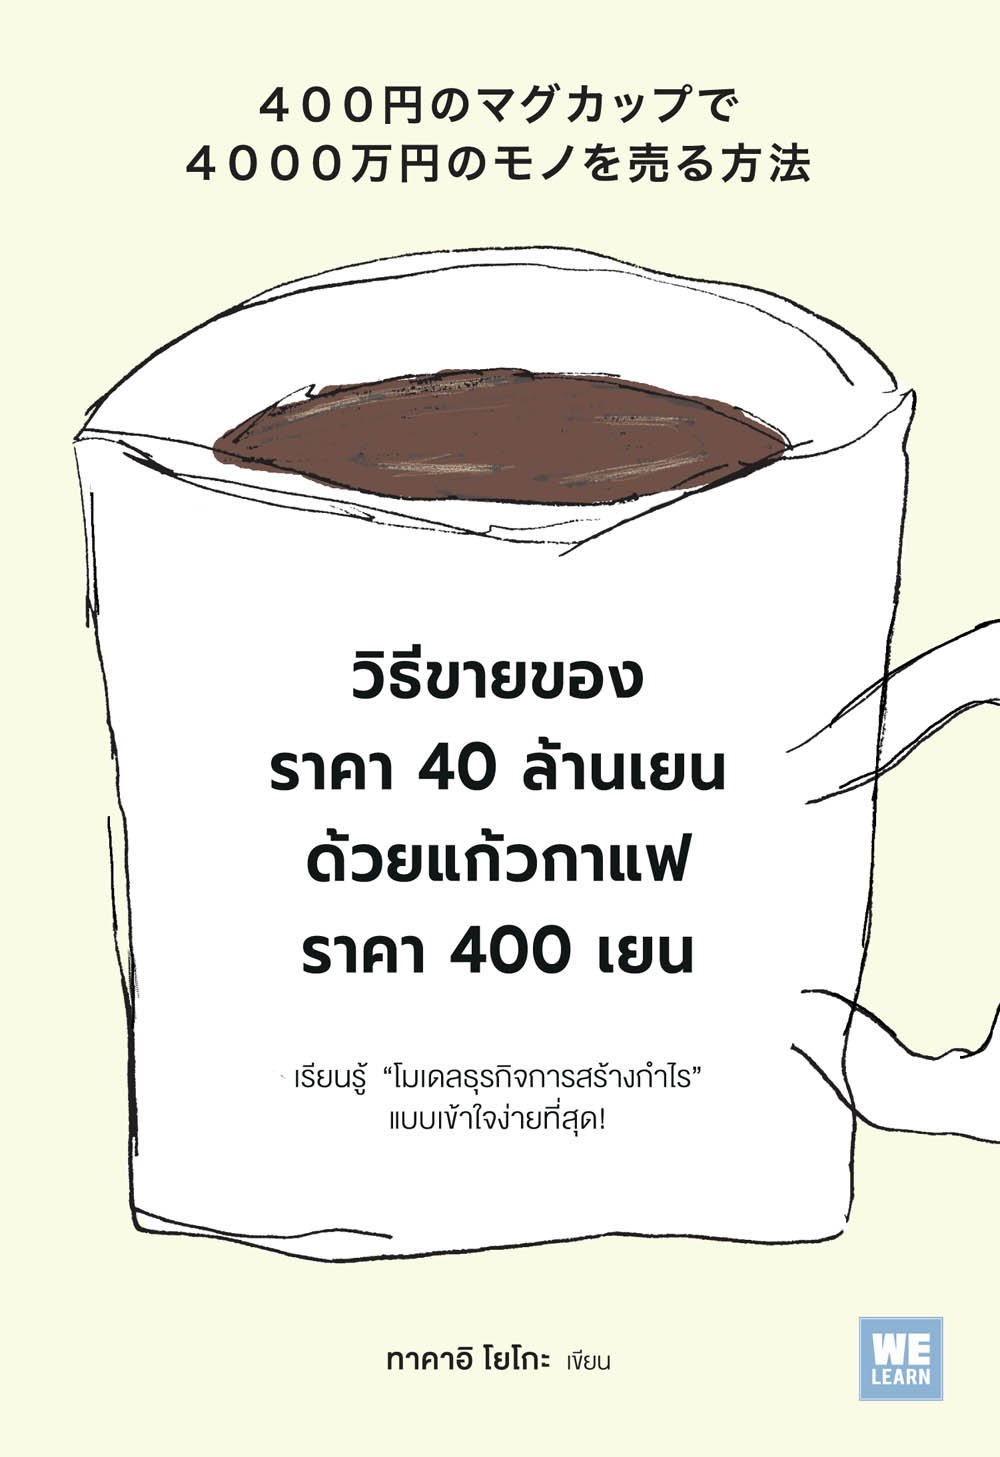 วิธีขายของราคา 40 ล้านเยน ด้วยแก้วกาแฟราคา 400 เยน  (400円のマグカップで4000万円のモノを売る方法)